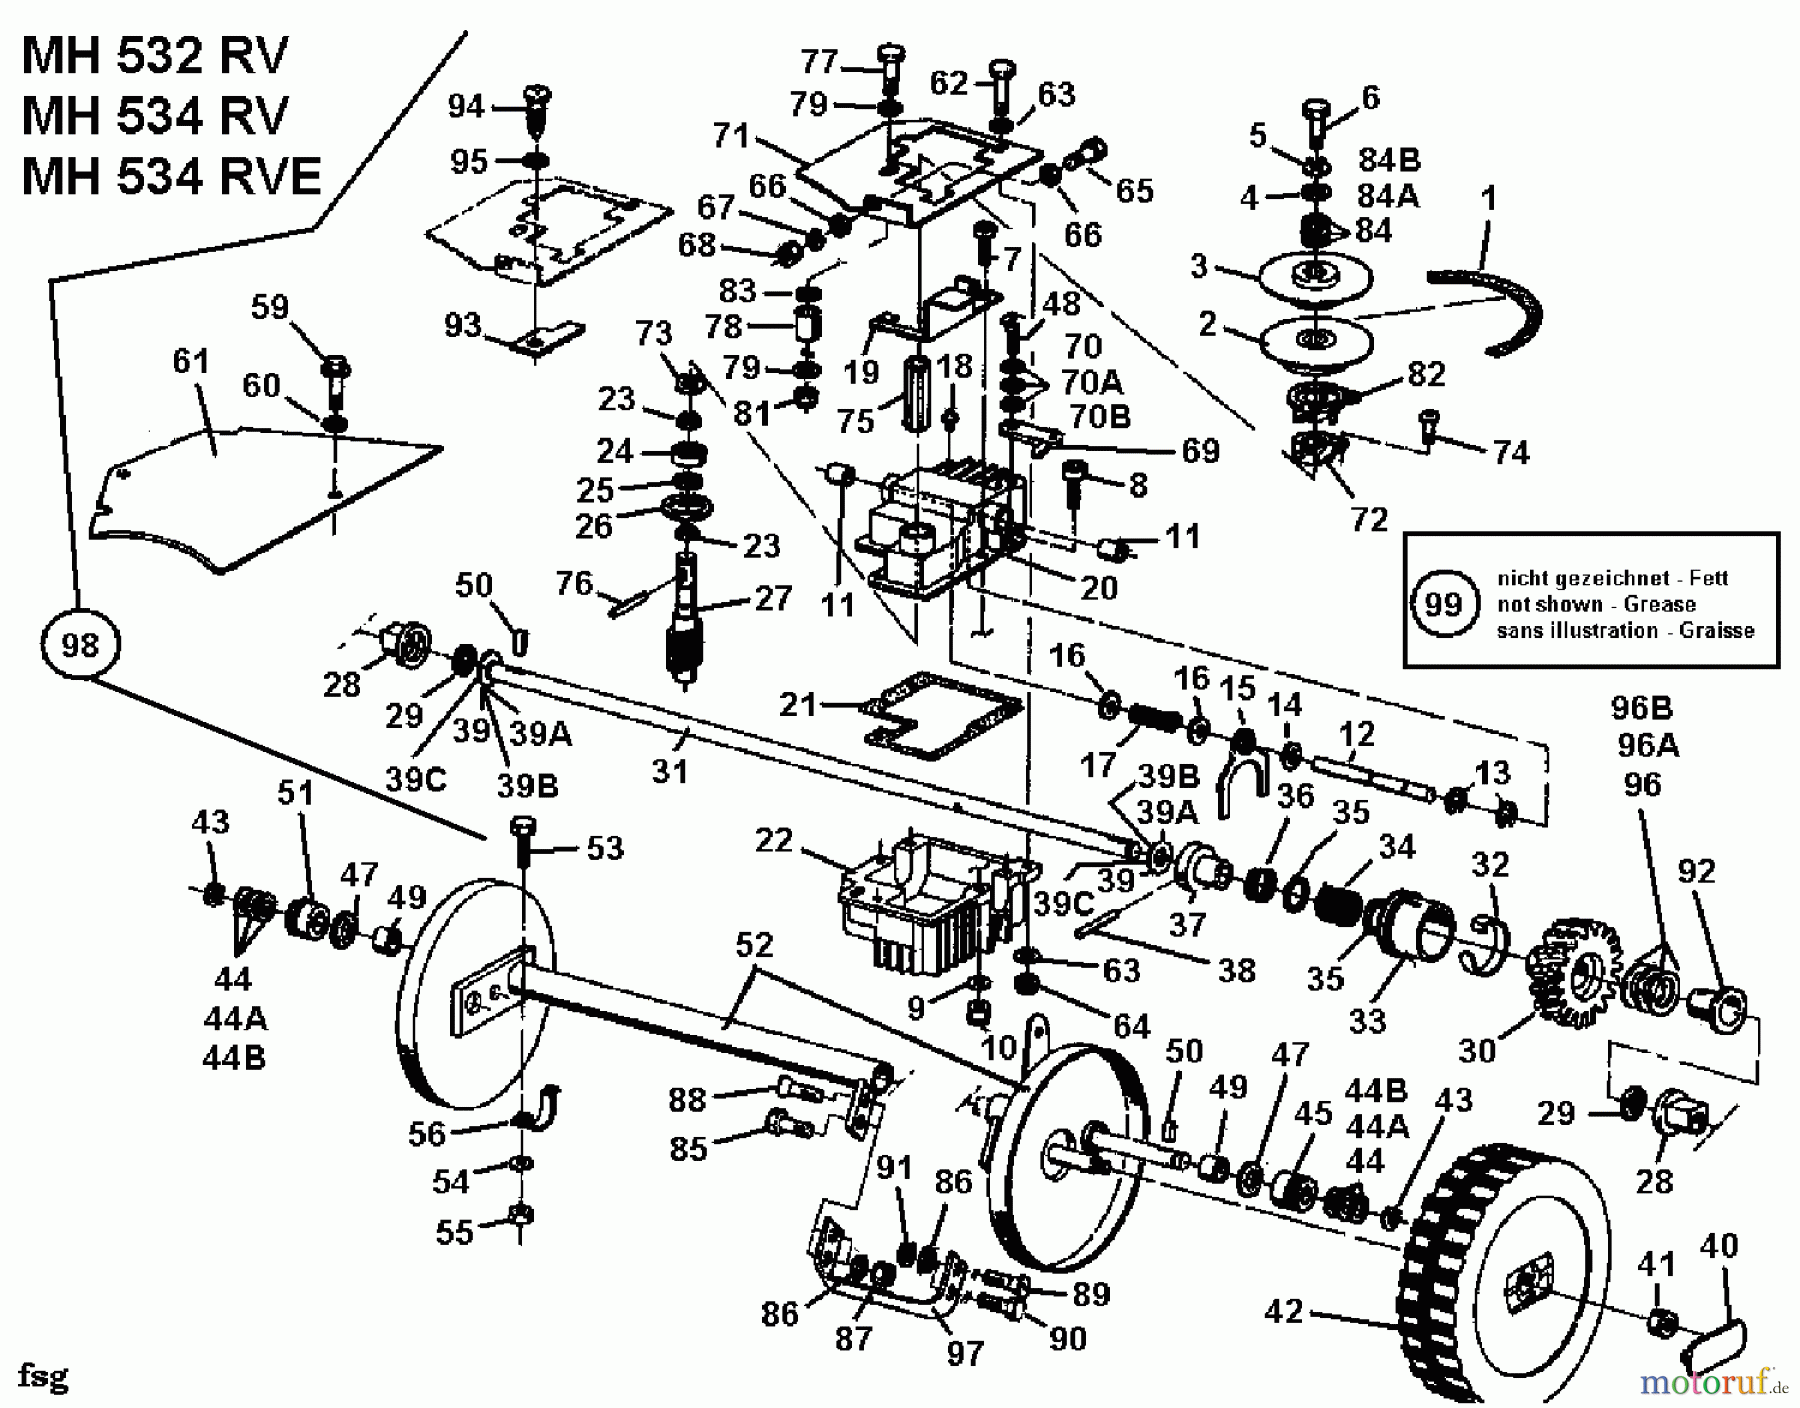  Gutbrod Petrol mower self propelled MH 534 RVE 04007.03  (1994) Gearbox, Wheels